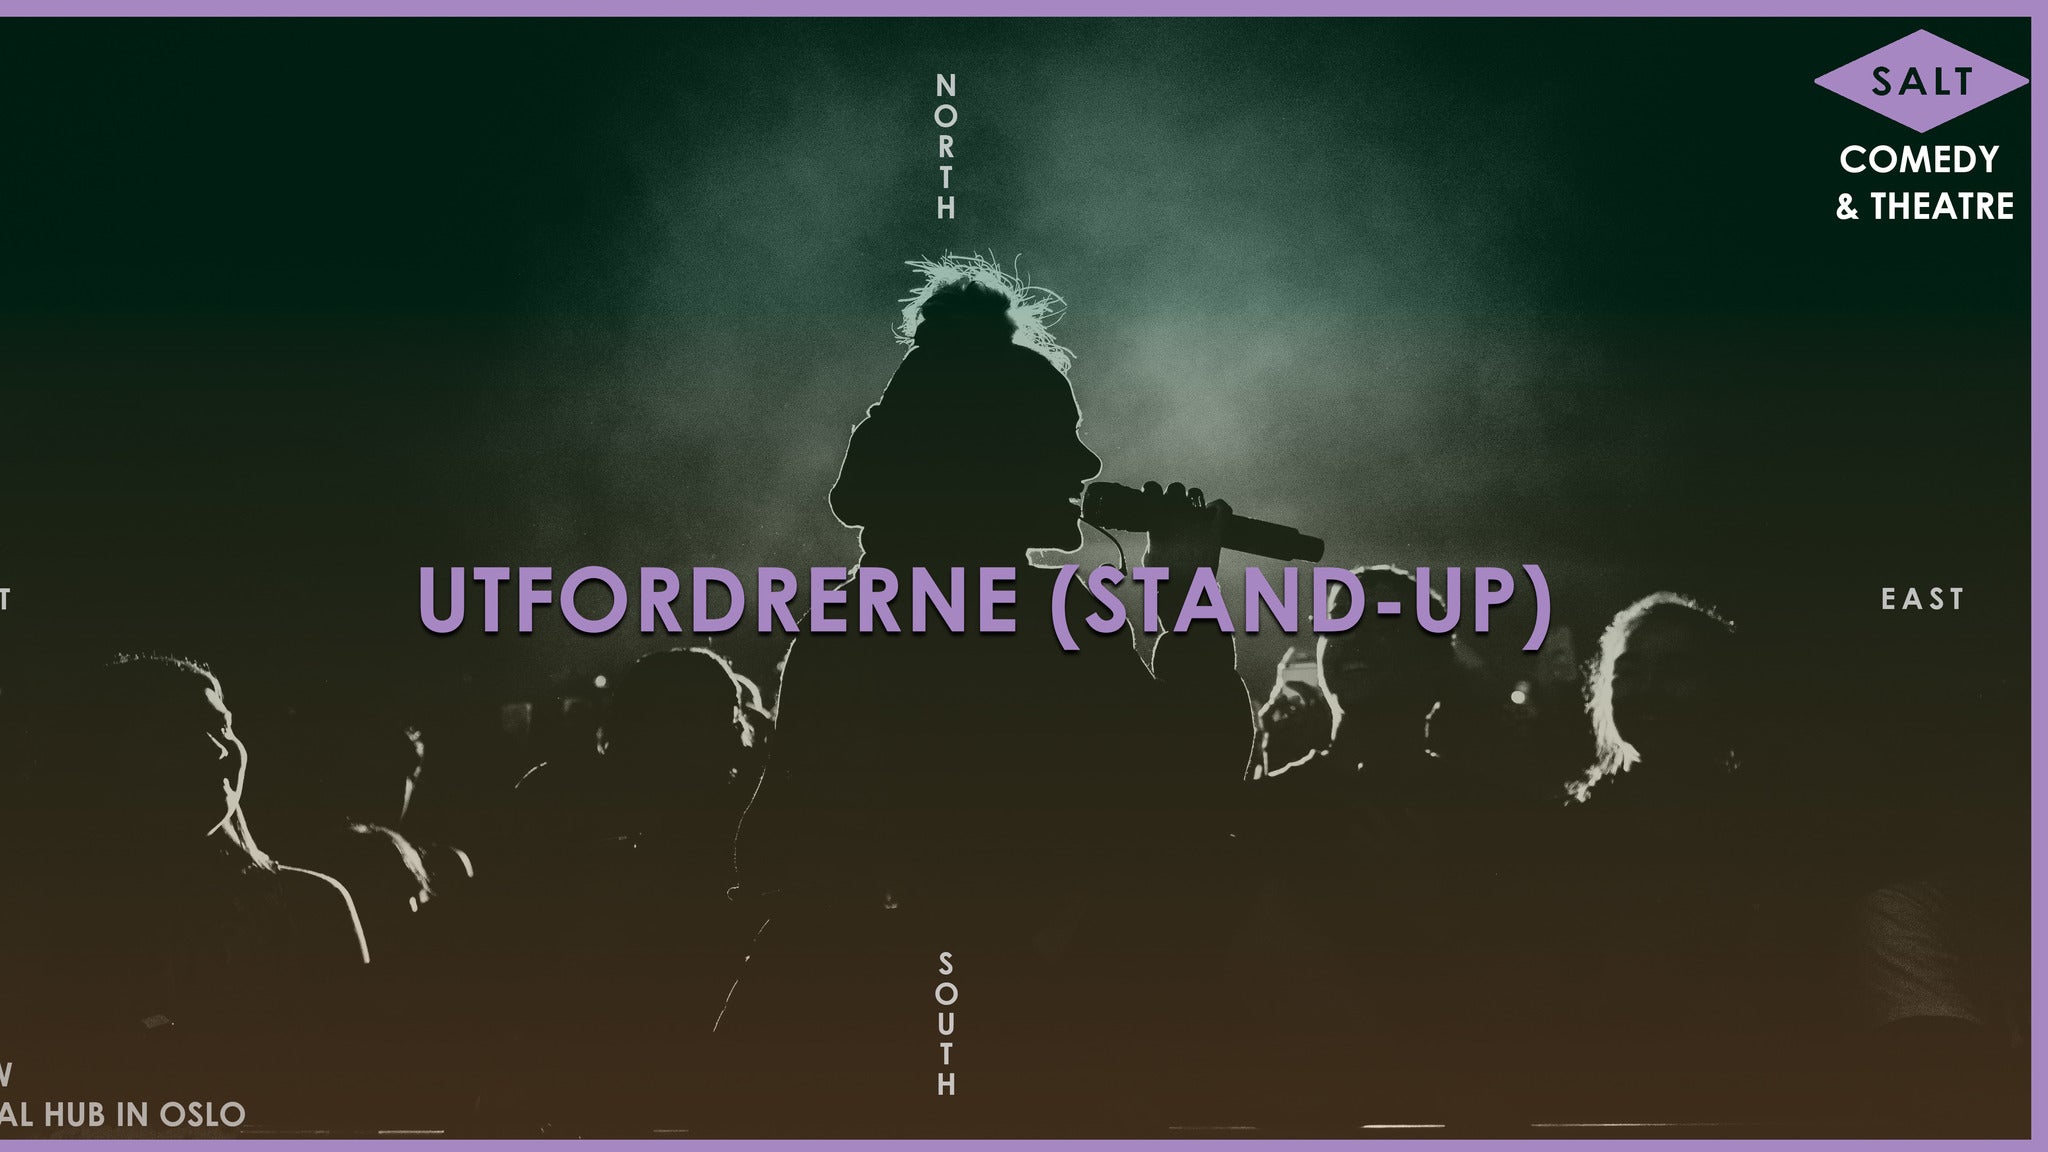 Utfordrerne (Stand-up) presale information on freepresalepasswords.com